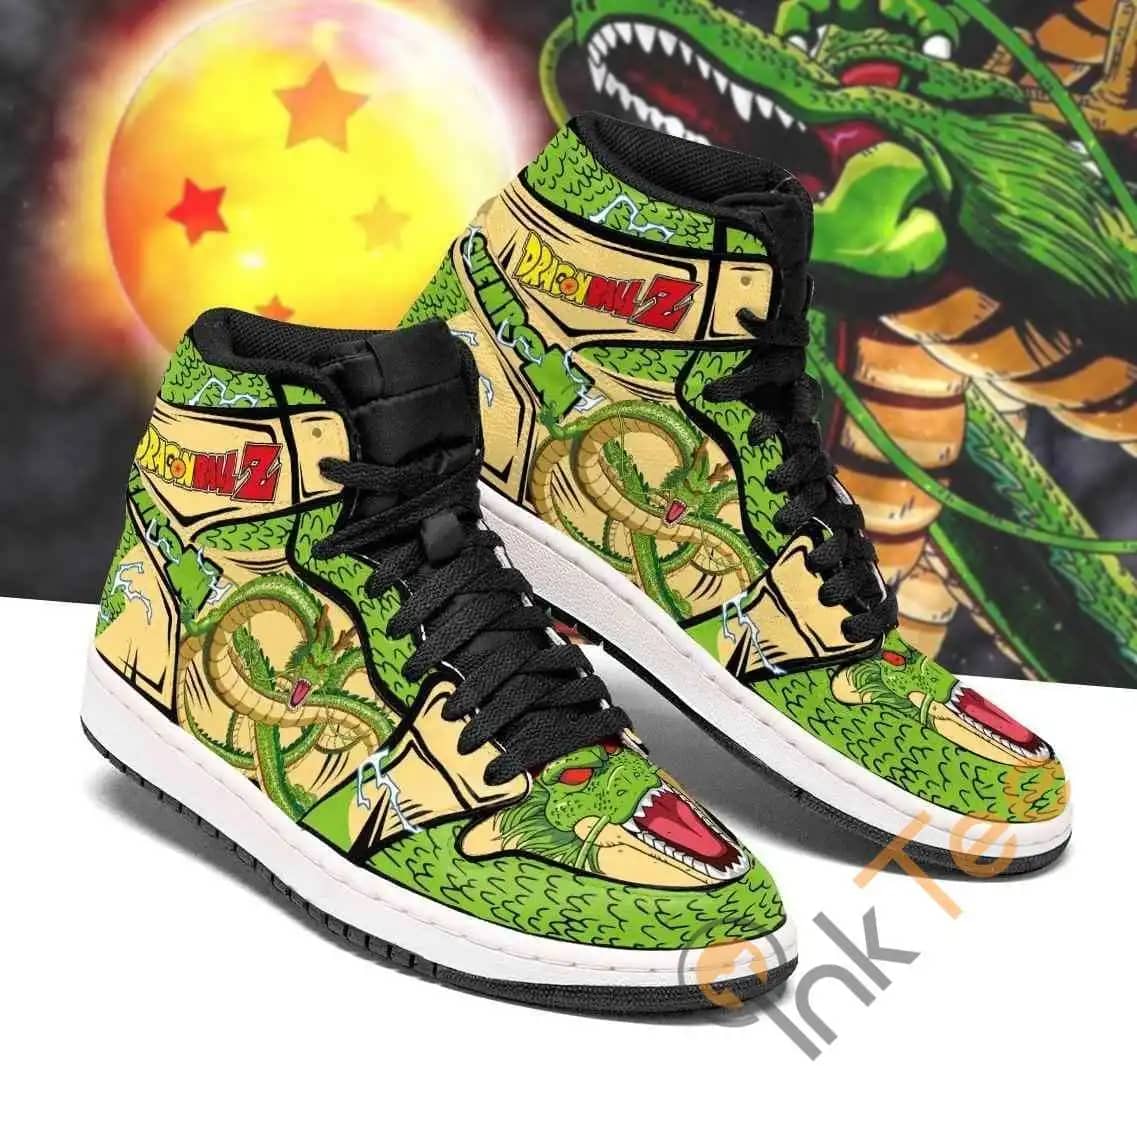 Shenron Dragon Ball Z Anime Sneakers Air Jordan Shoes